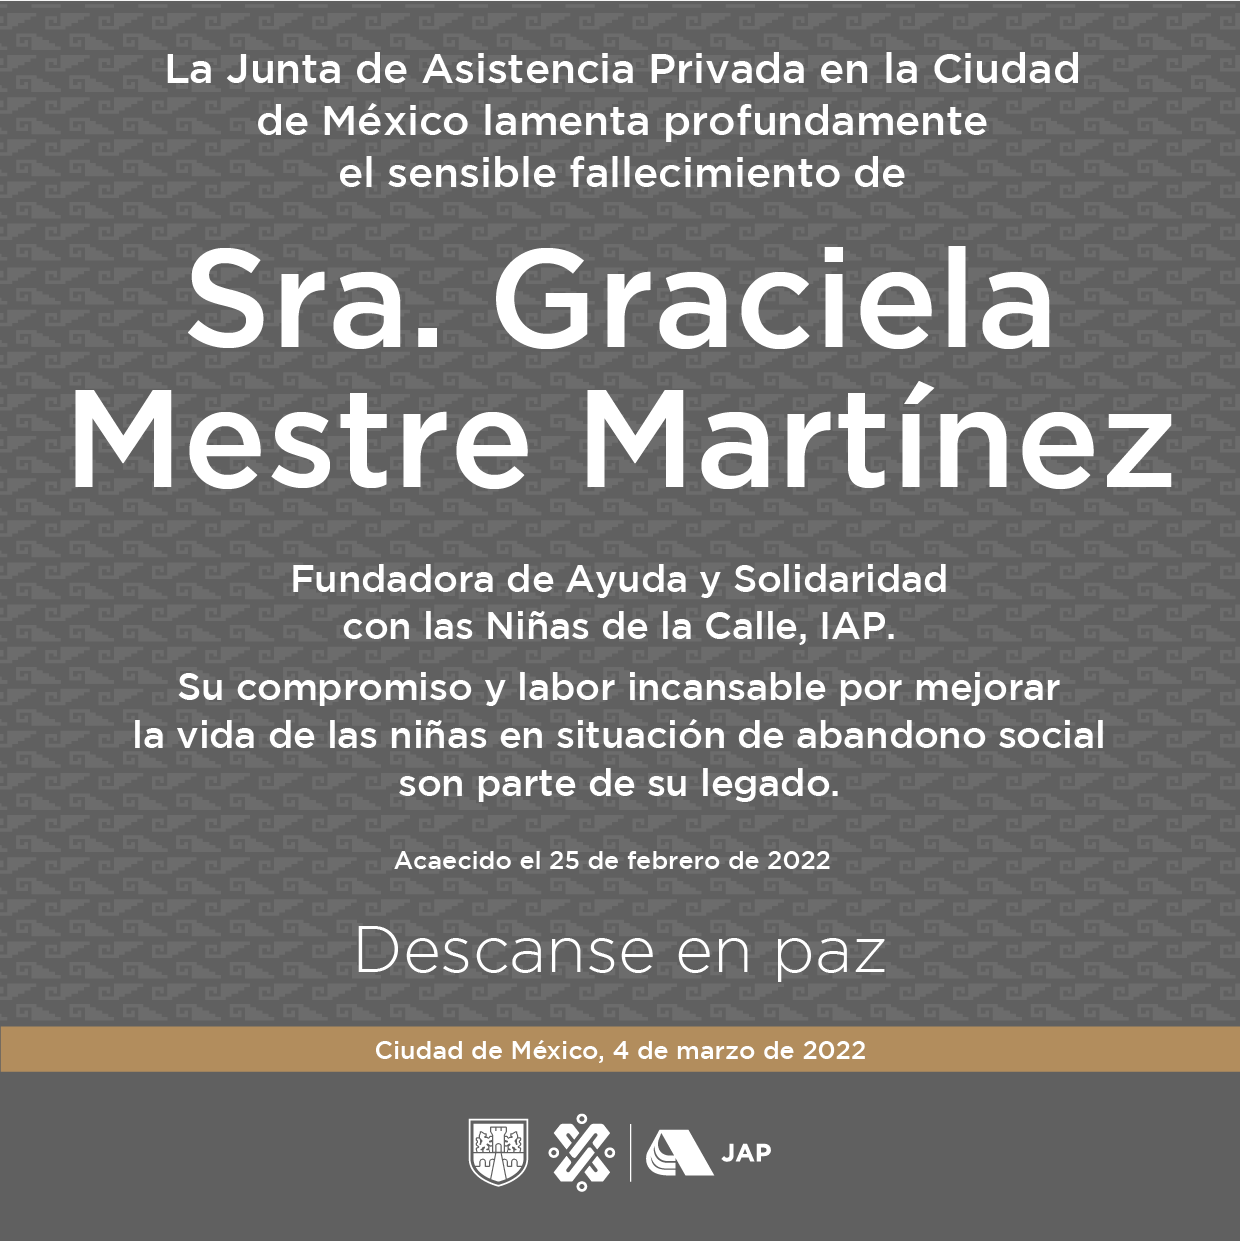 Lamentamos el sensible fallecimiento de Graciela Mestre Martínez, fundadora de Ayuda y Solidaridad con las Niñas de la Calle, IAP